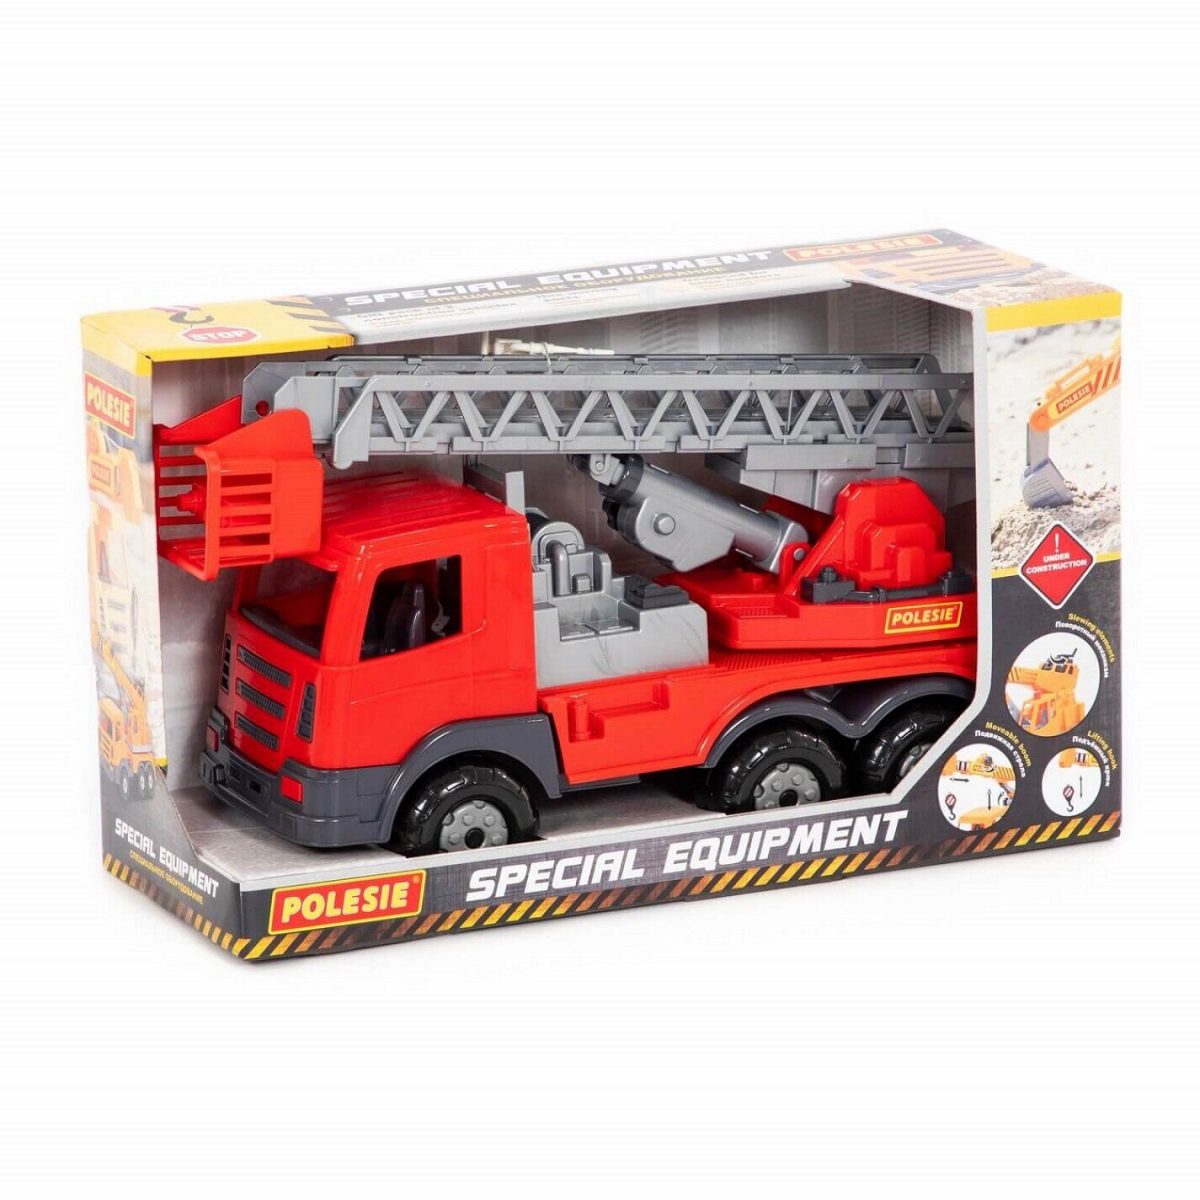 Іграшка Polesie Престиж, автомобіль пожежний, (79718)